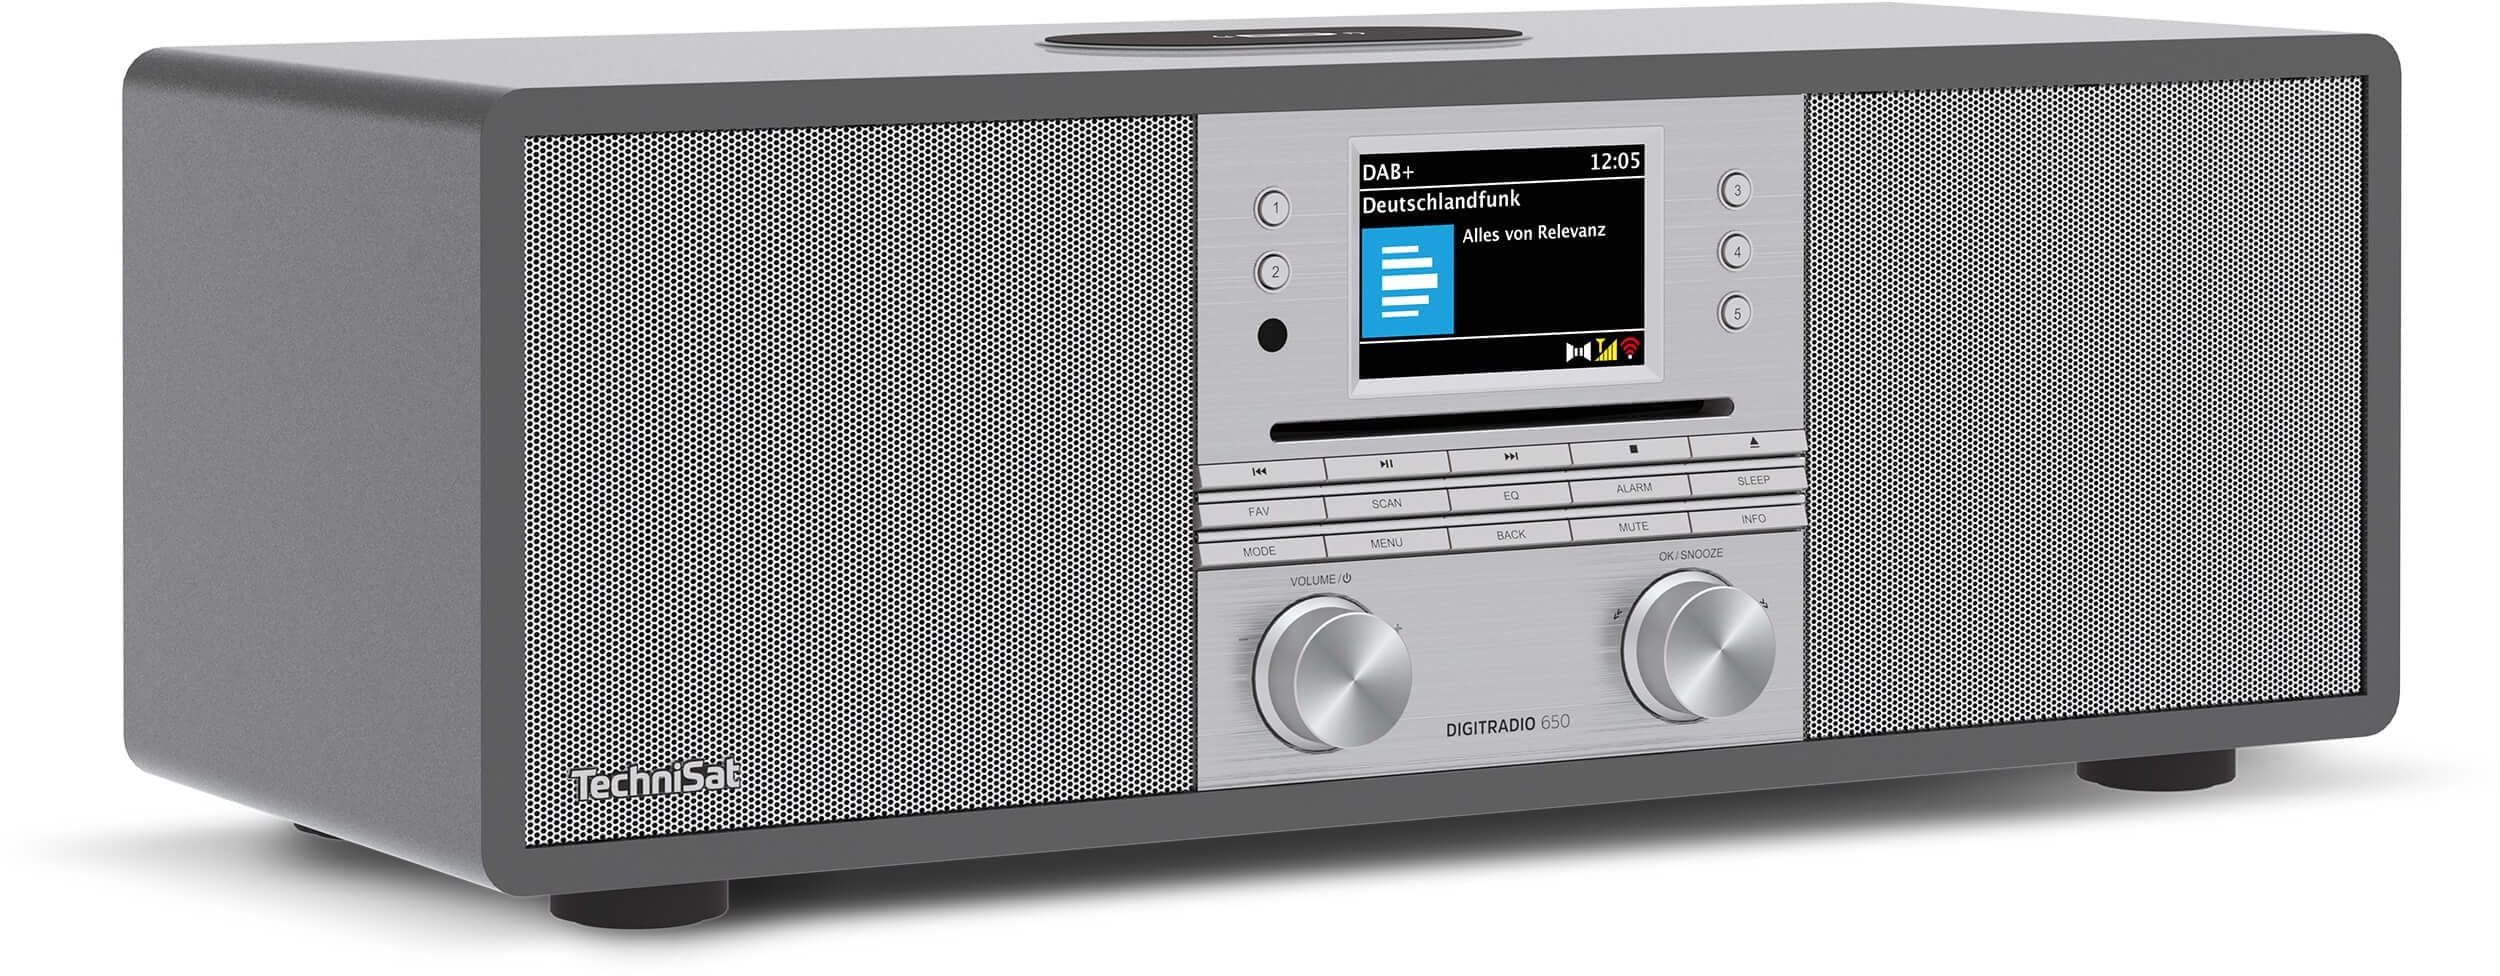 Technisat DIGITRADIO 650 - Kompaktanlage mit 70 Watt 2.1 Lautsprecher-System (Musik-Anlage mit Internetradio, DAB+, UKW, CD-Player, Bluetooth, App-Steuerung, Qi Ladestation, Spotify & Amazon Music)